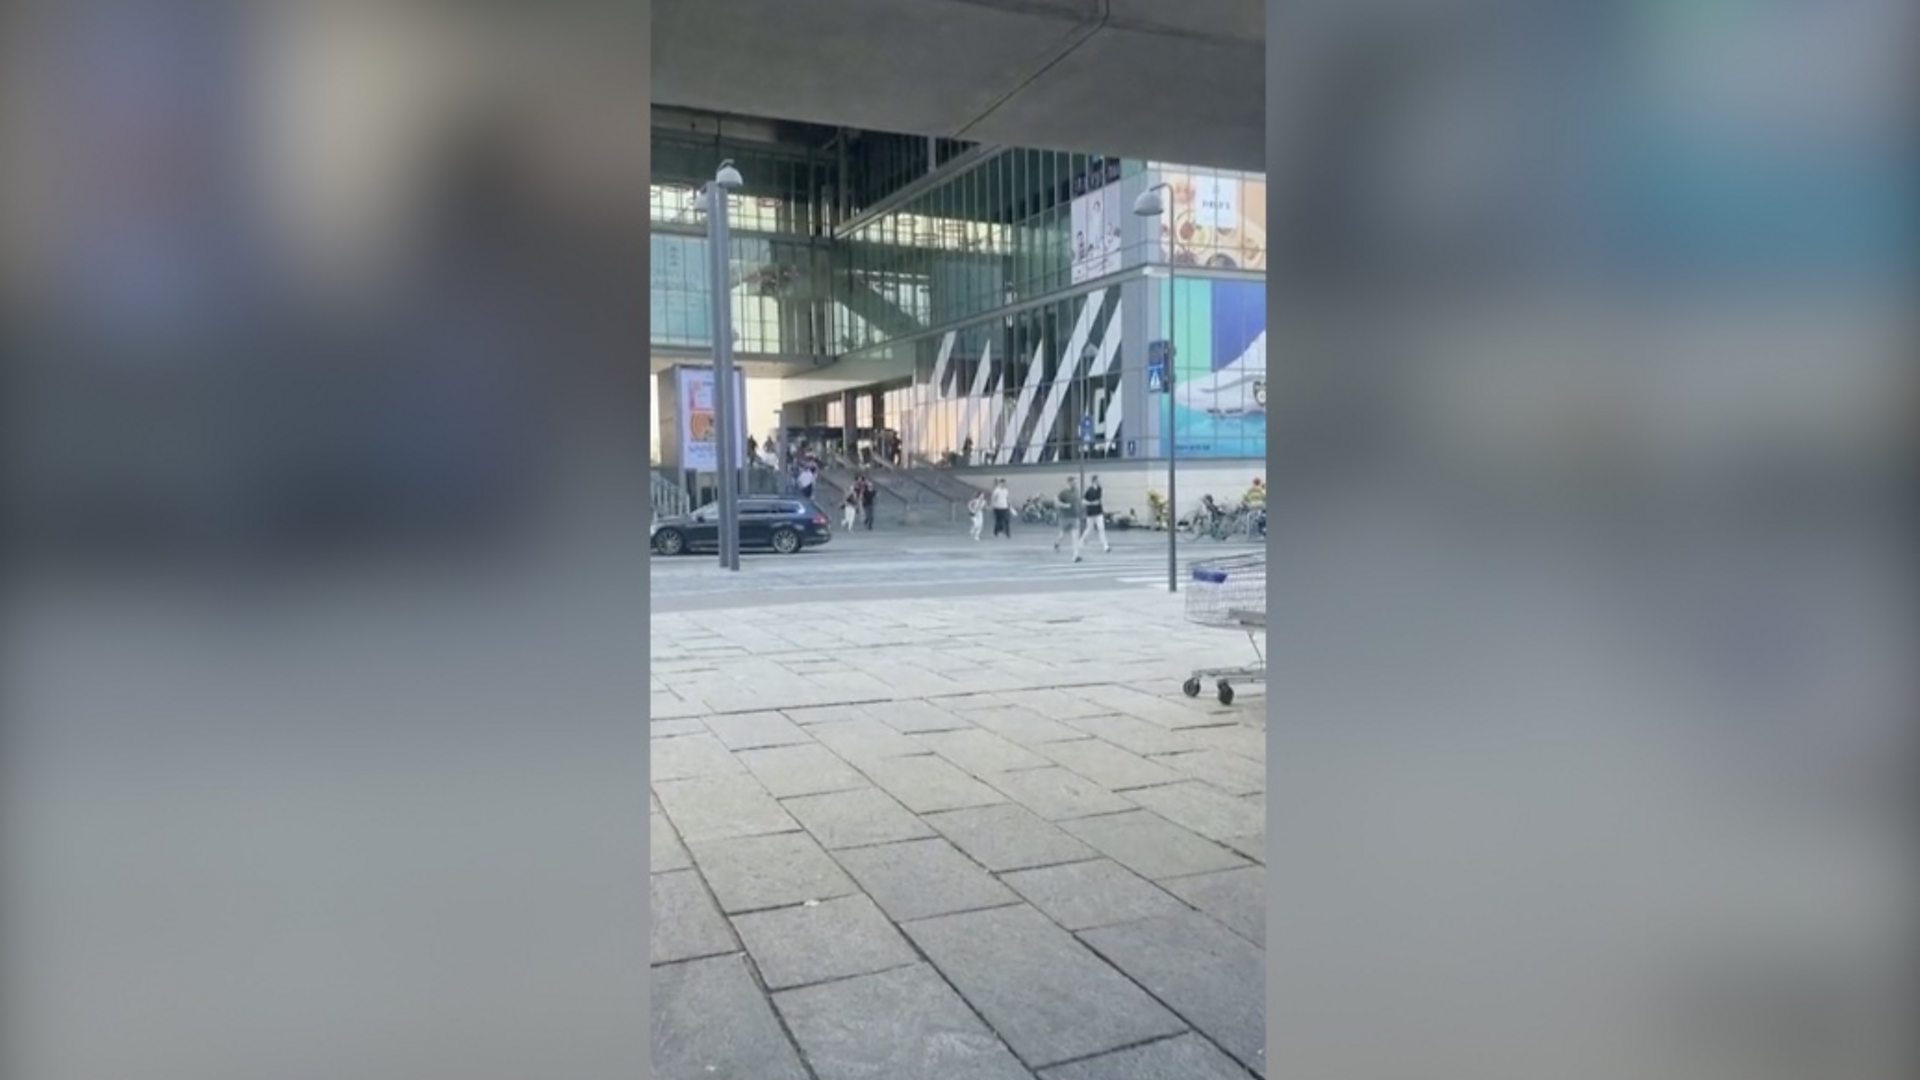 Снимак панике у тржном центру у Копенхаге